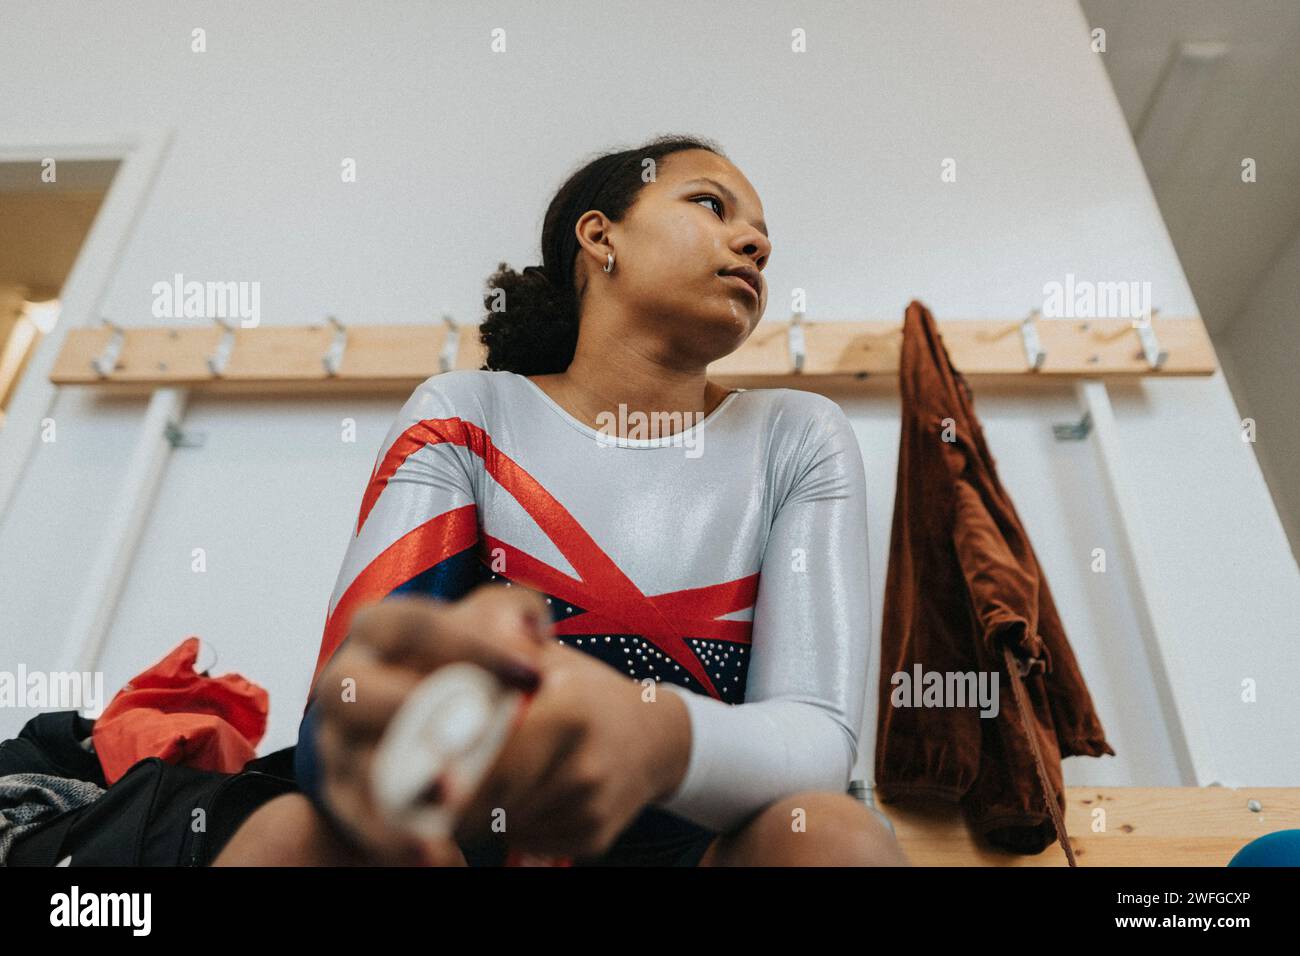 Besinnliches Teenager-Mädchen in Sportkleidung, das in der Umkleidekabine sitzt Stockfoto